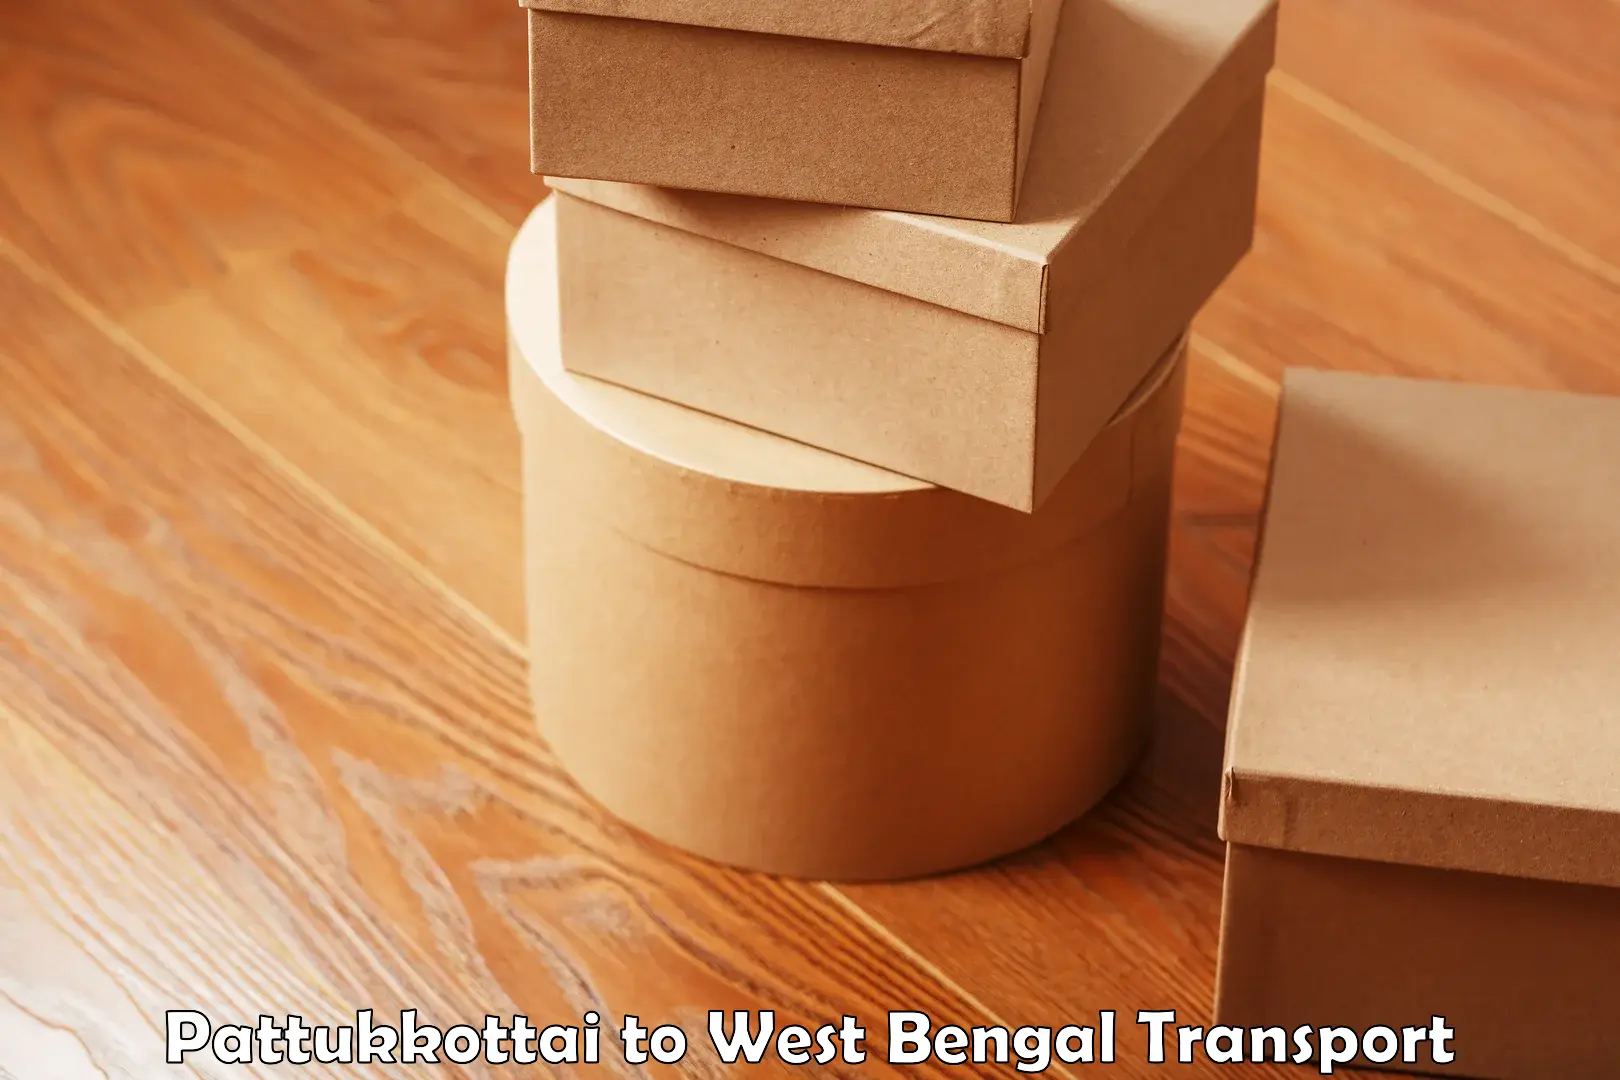 Shipping partner Pattukkottai to West Bengal